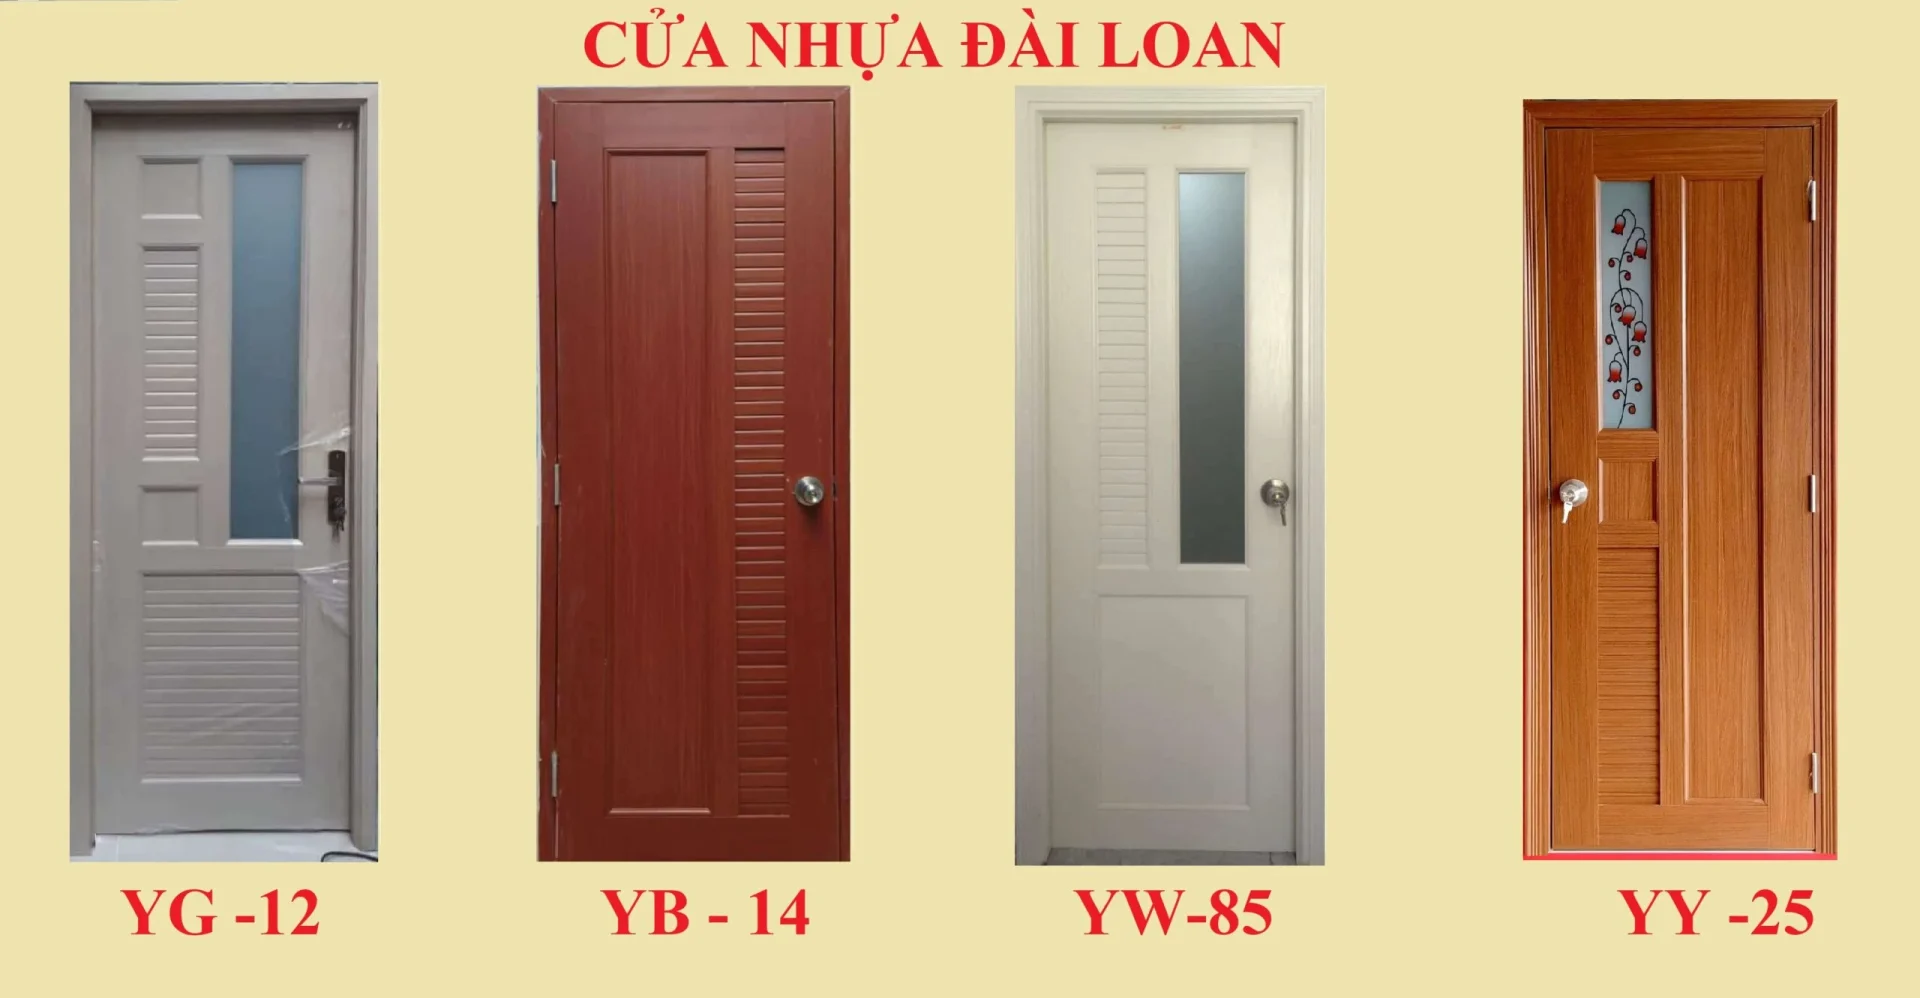 cua-nhua-dai-loan-scaled-1-scaled-2.webp